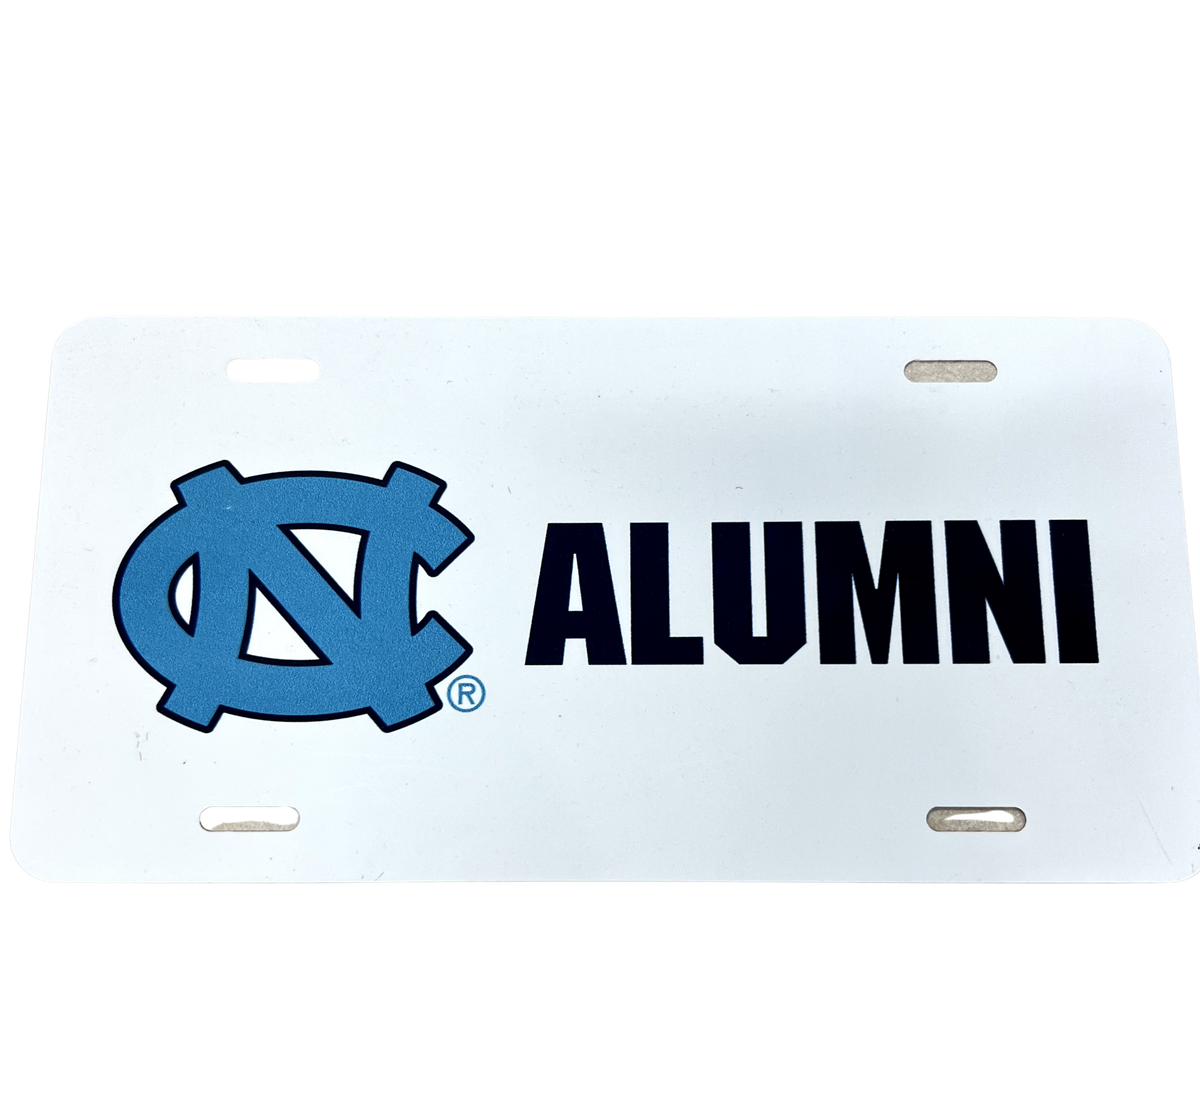 UNC Alumni License Plate